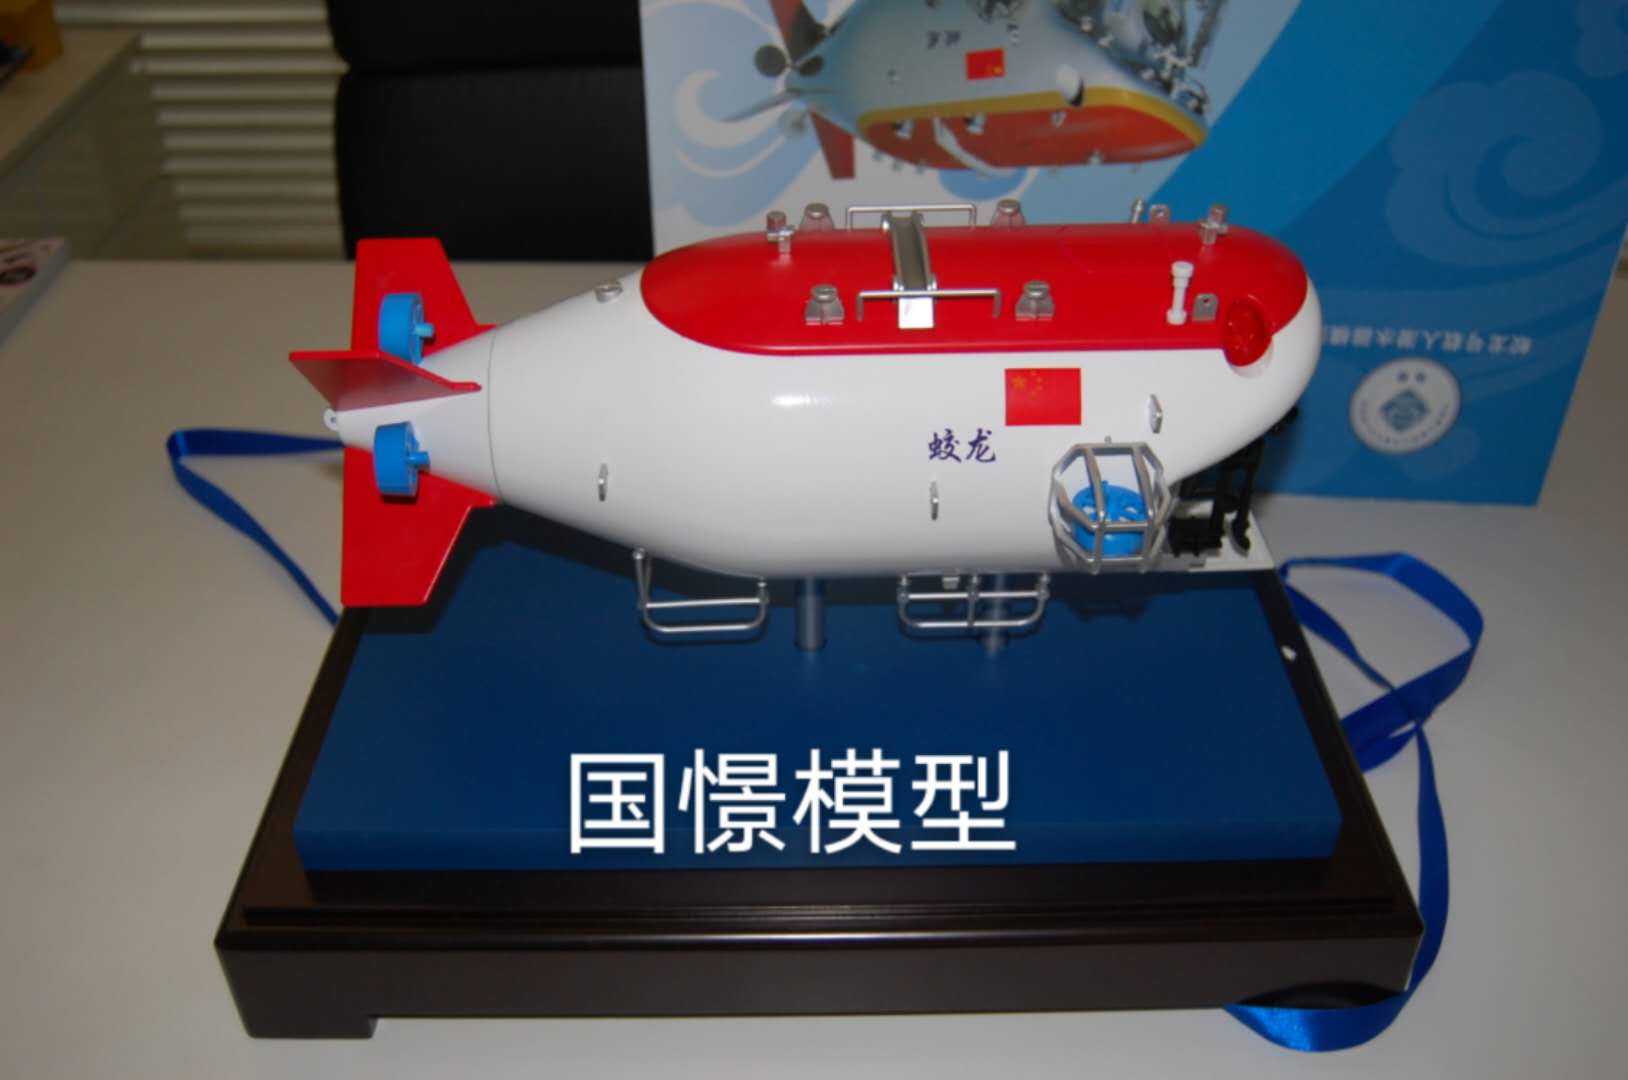 昌宁县船舶模型